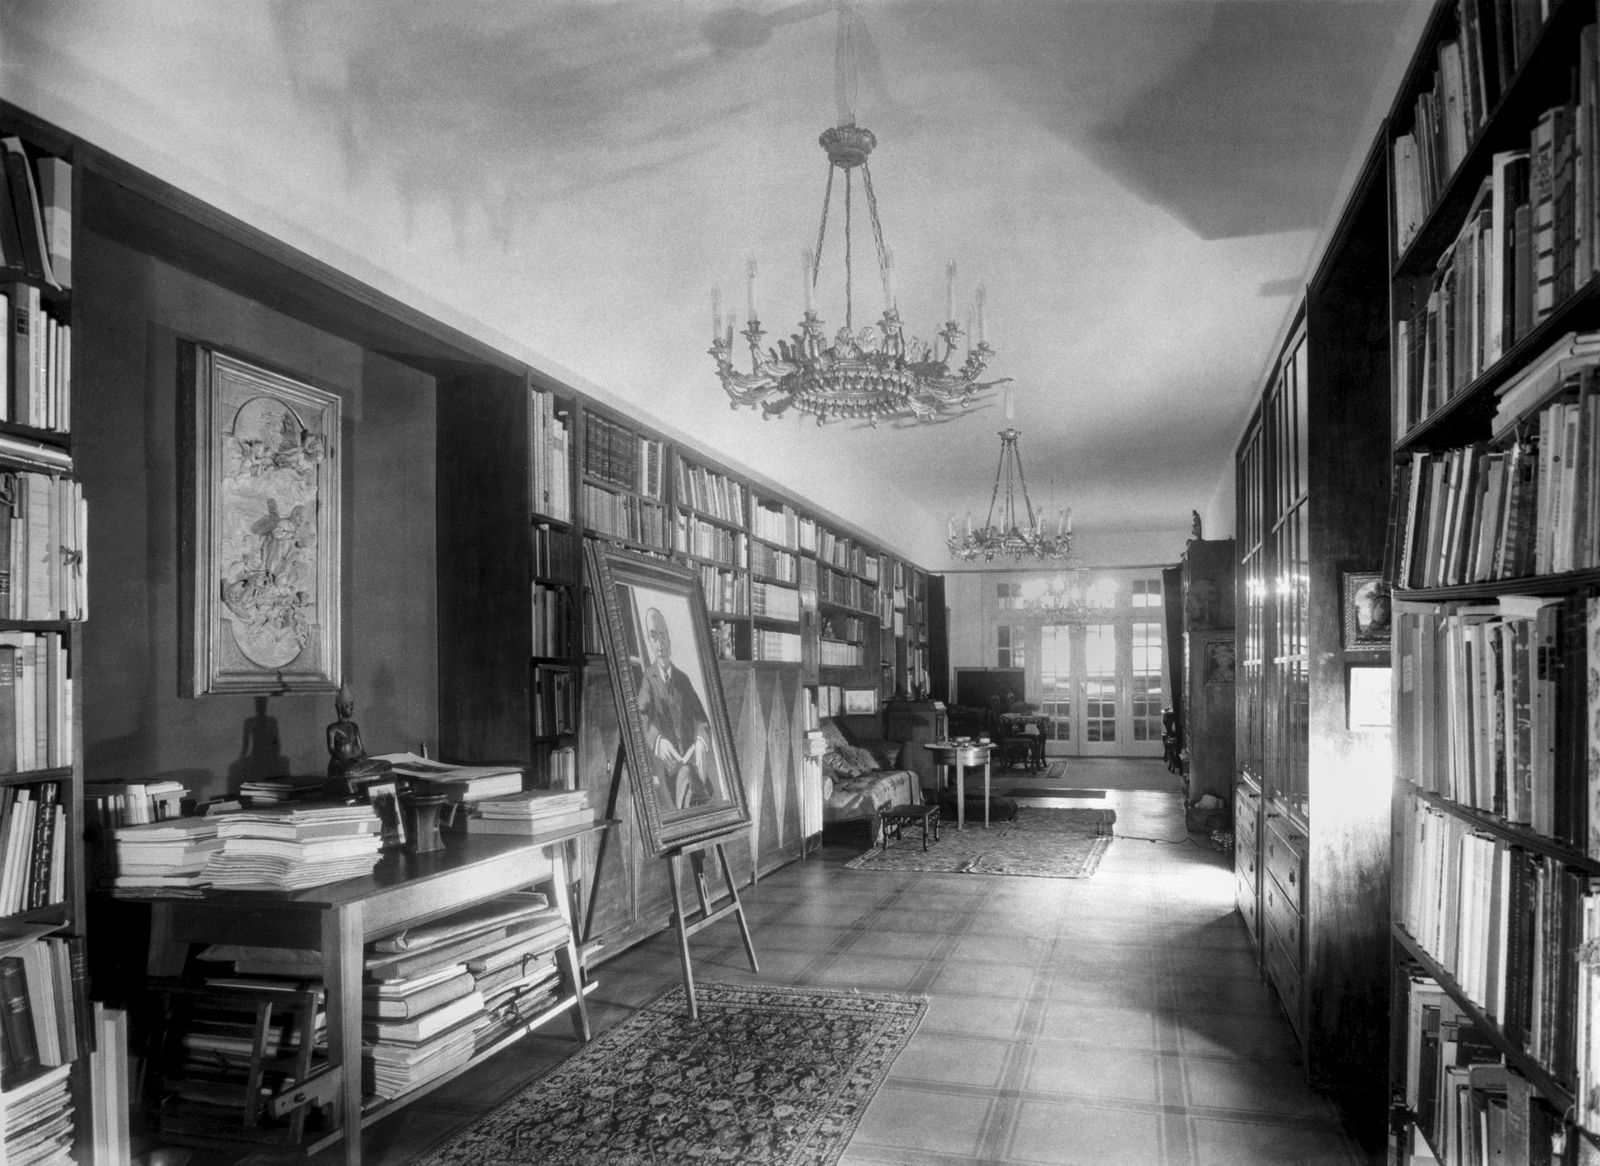 -	Bibliothek, Wohnung Curt und Elsa Glaser, Prinz-Albrecht-Straße 8. Ca. 1930. Landesarchiv Berlin / Fotografin: Marta Huth